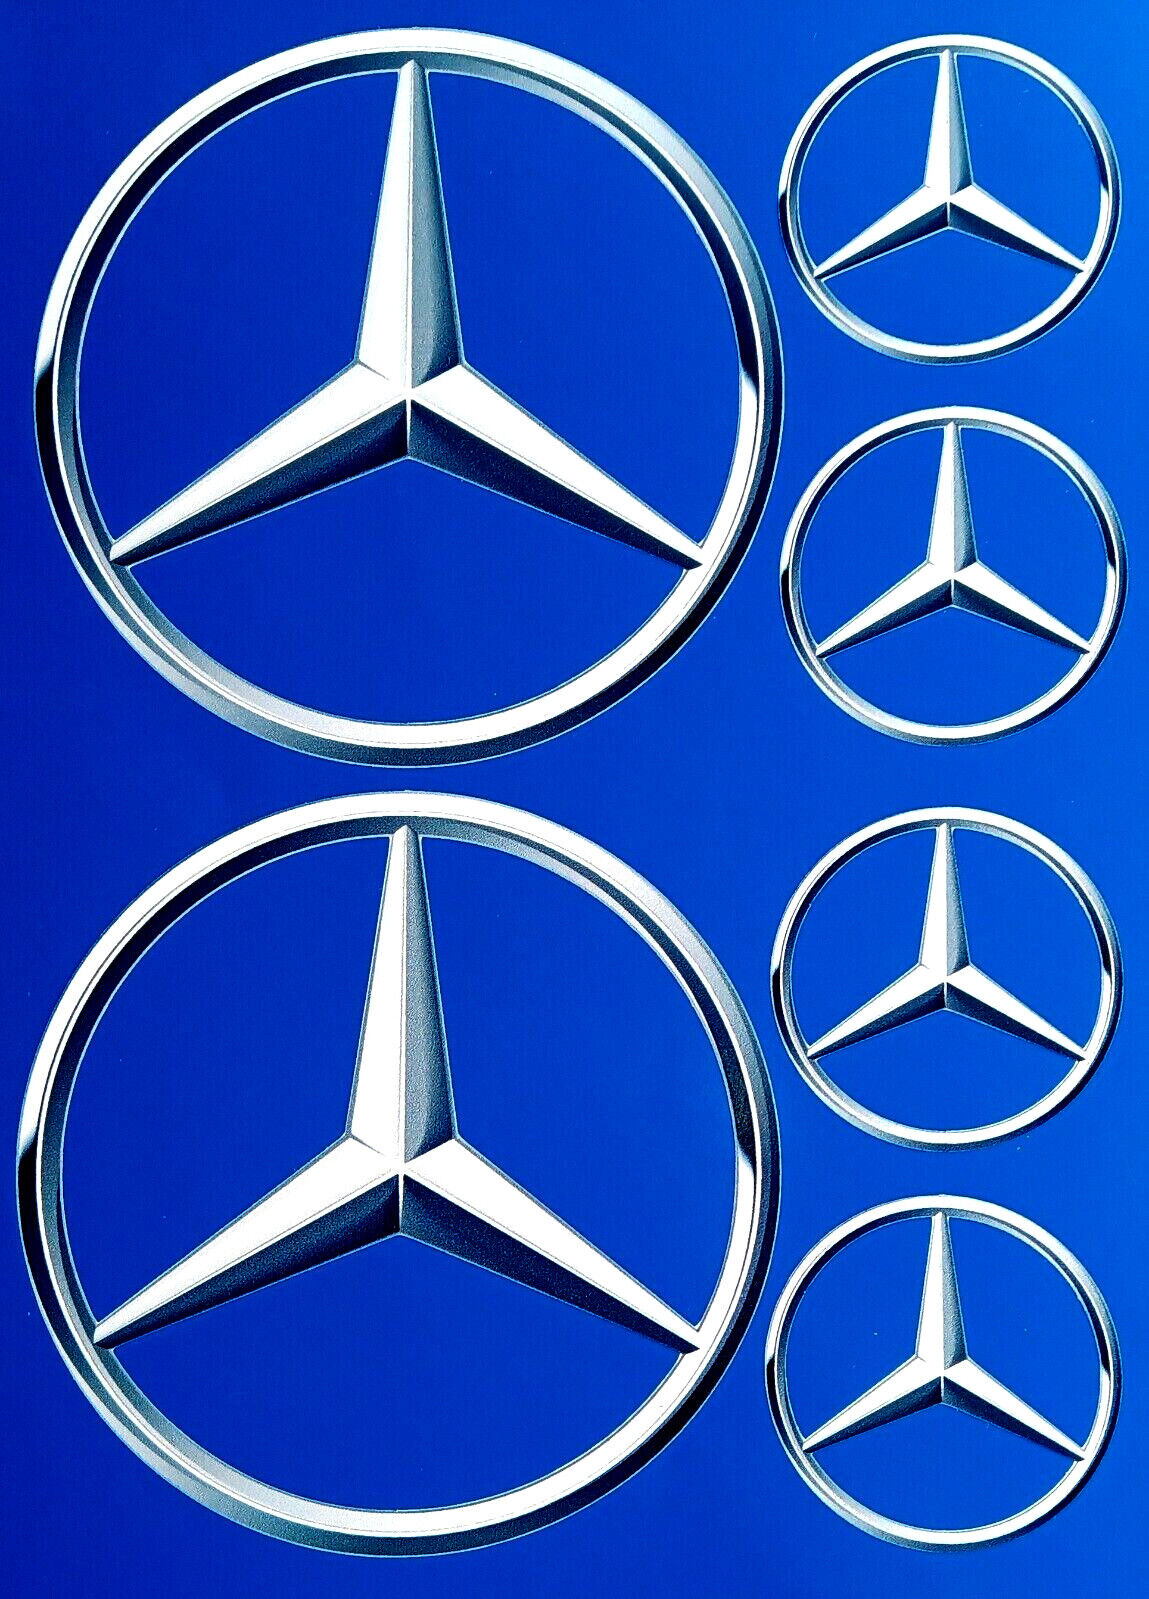 Mercedes Benz Emblem Car Decal Vinyl Sticker 3d Effect – Redsigns